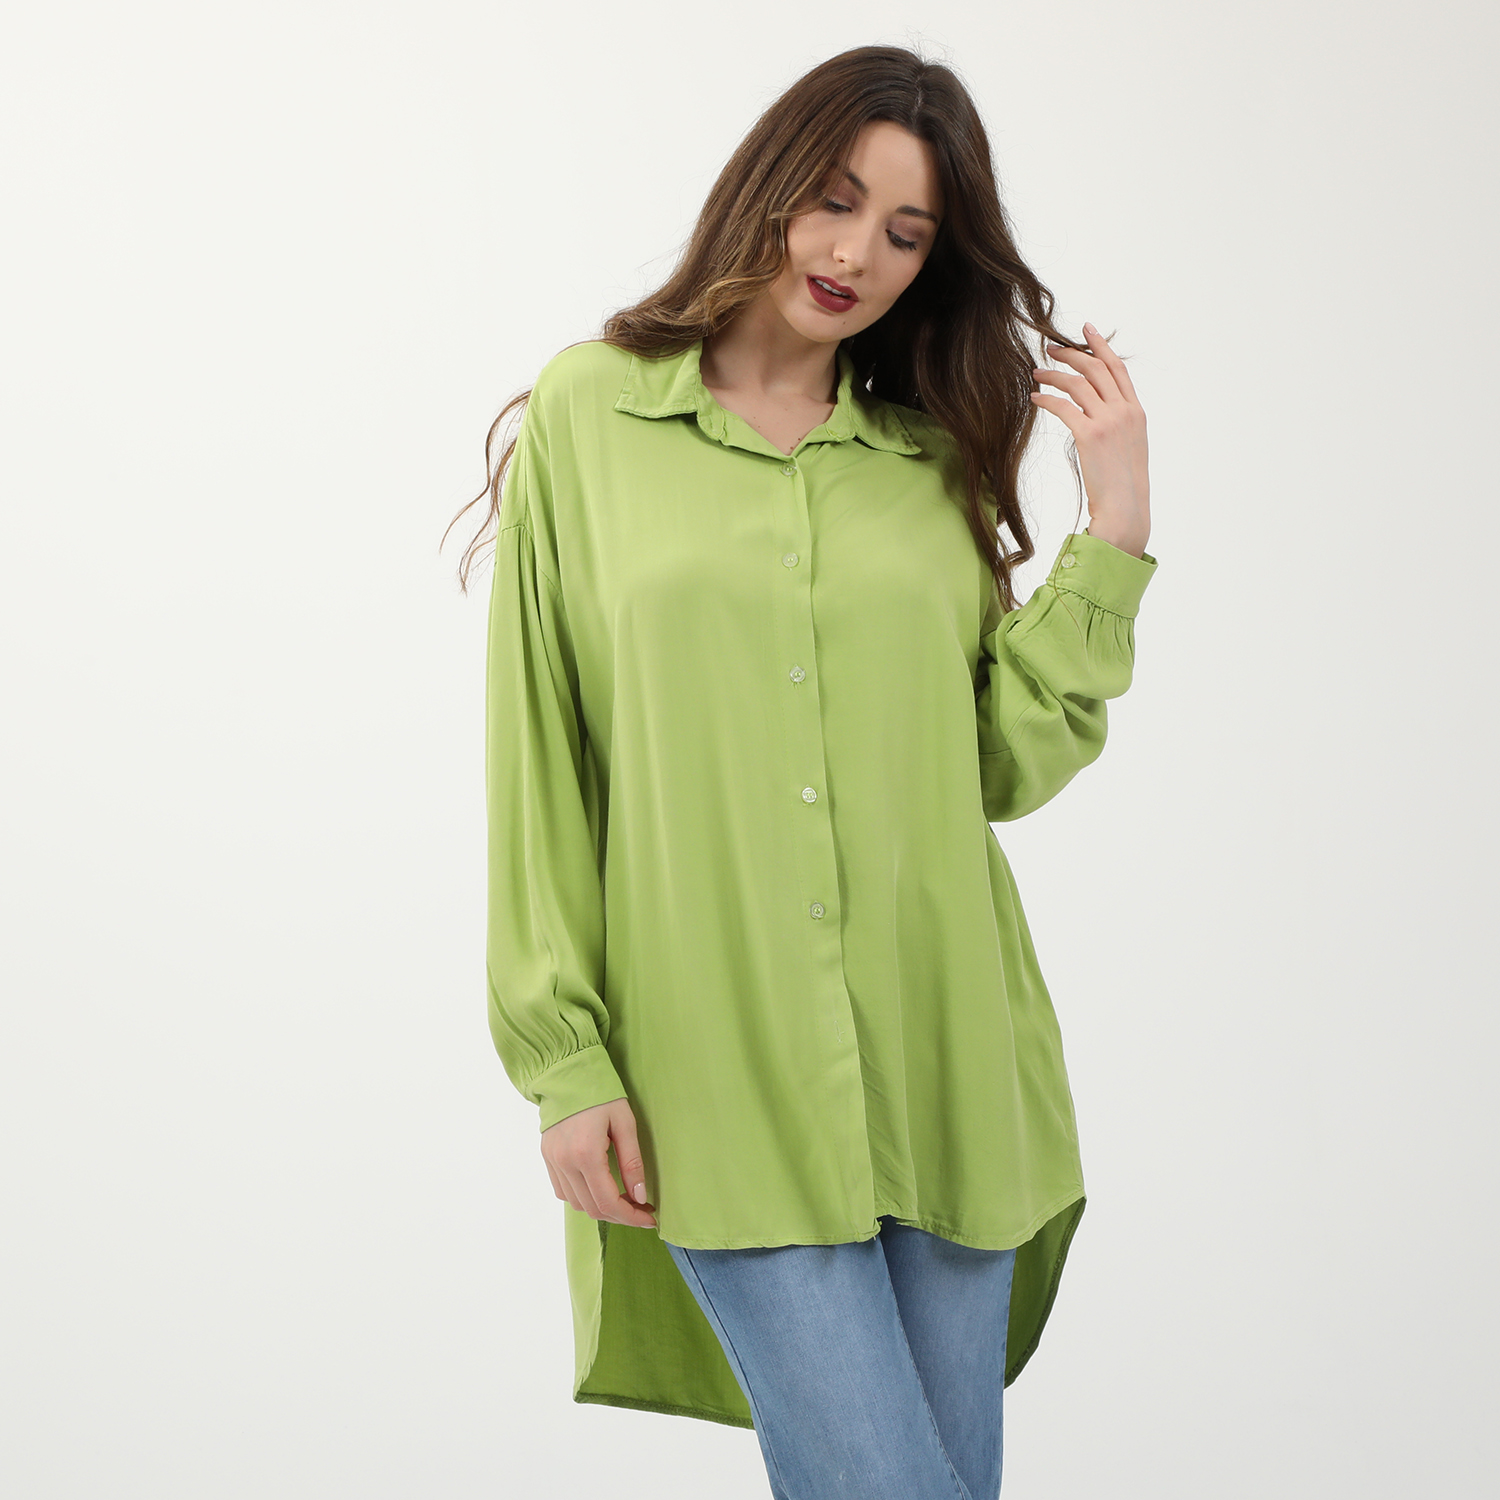 Γυναικεία/Ρούχα/Πουκάμισα/Πουκαμίσες ATTRATTIVO - Γυναικεία μακριά πουκαμίσα ATTRATTIVO πράσινη